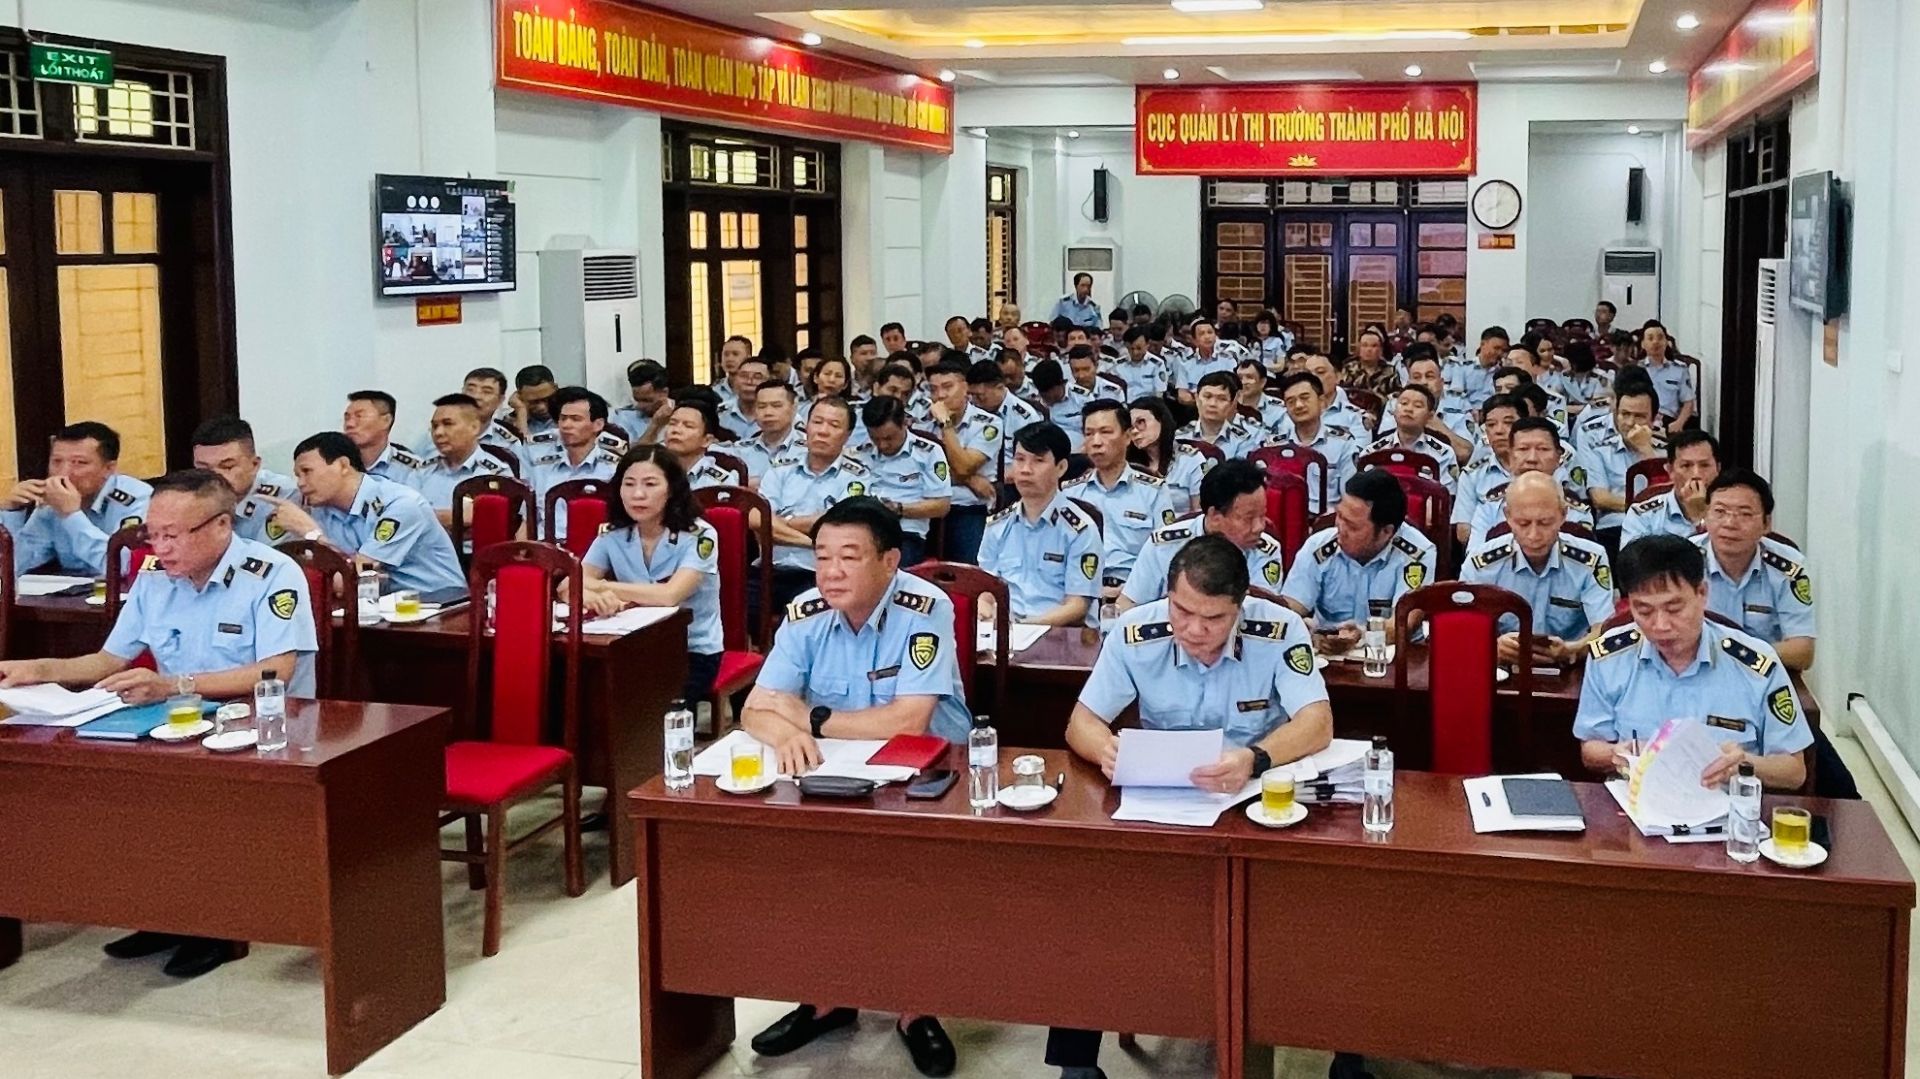 Lực lượng Quản lý thị trường Hà Nội xử lý 2.554 vụ buôn lậu, gian lận thương mại